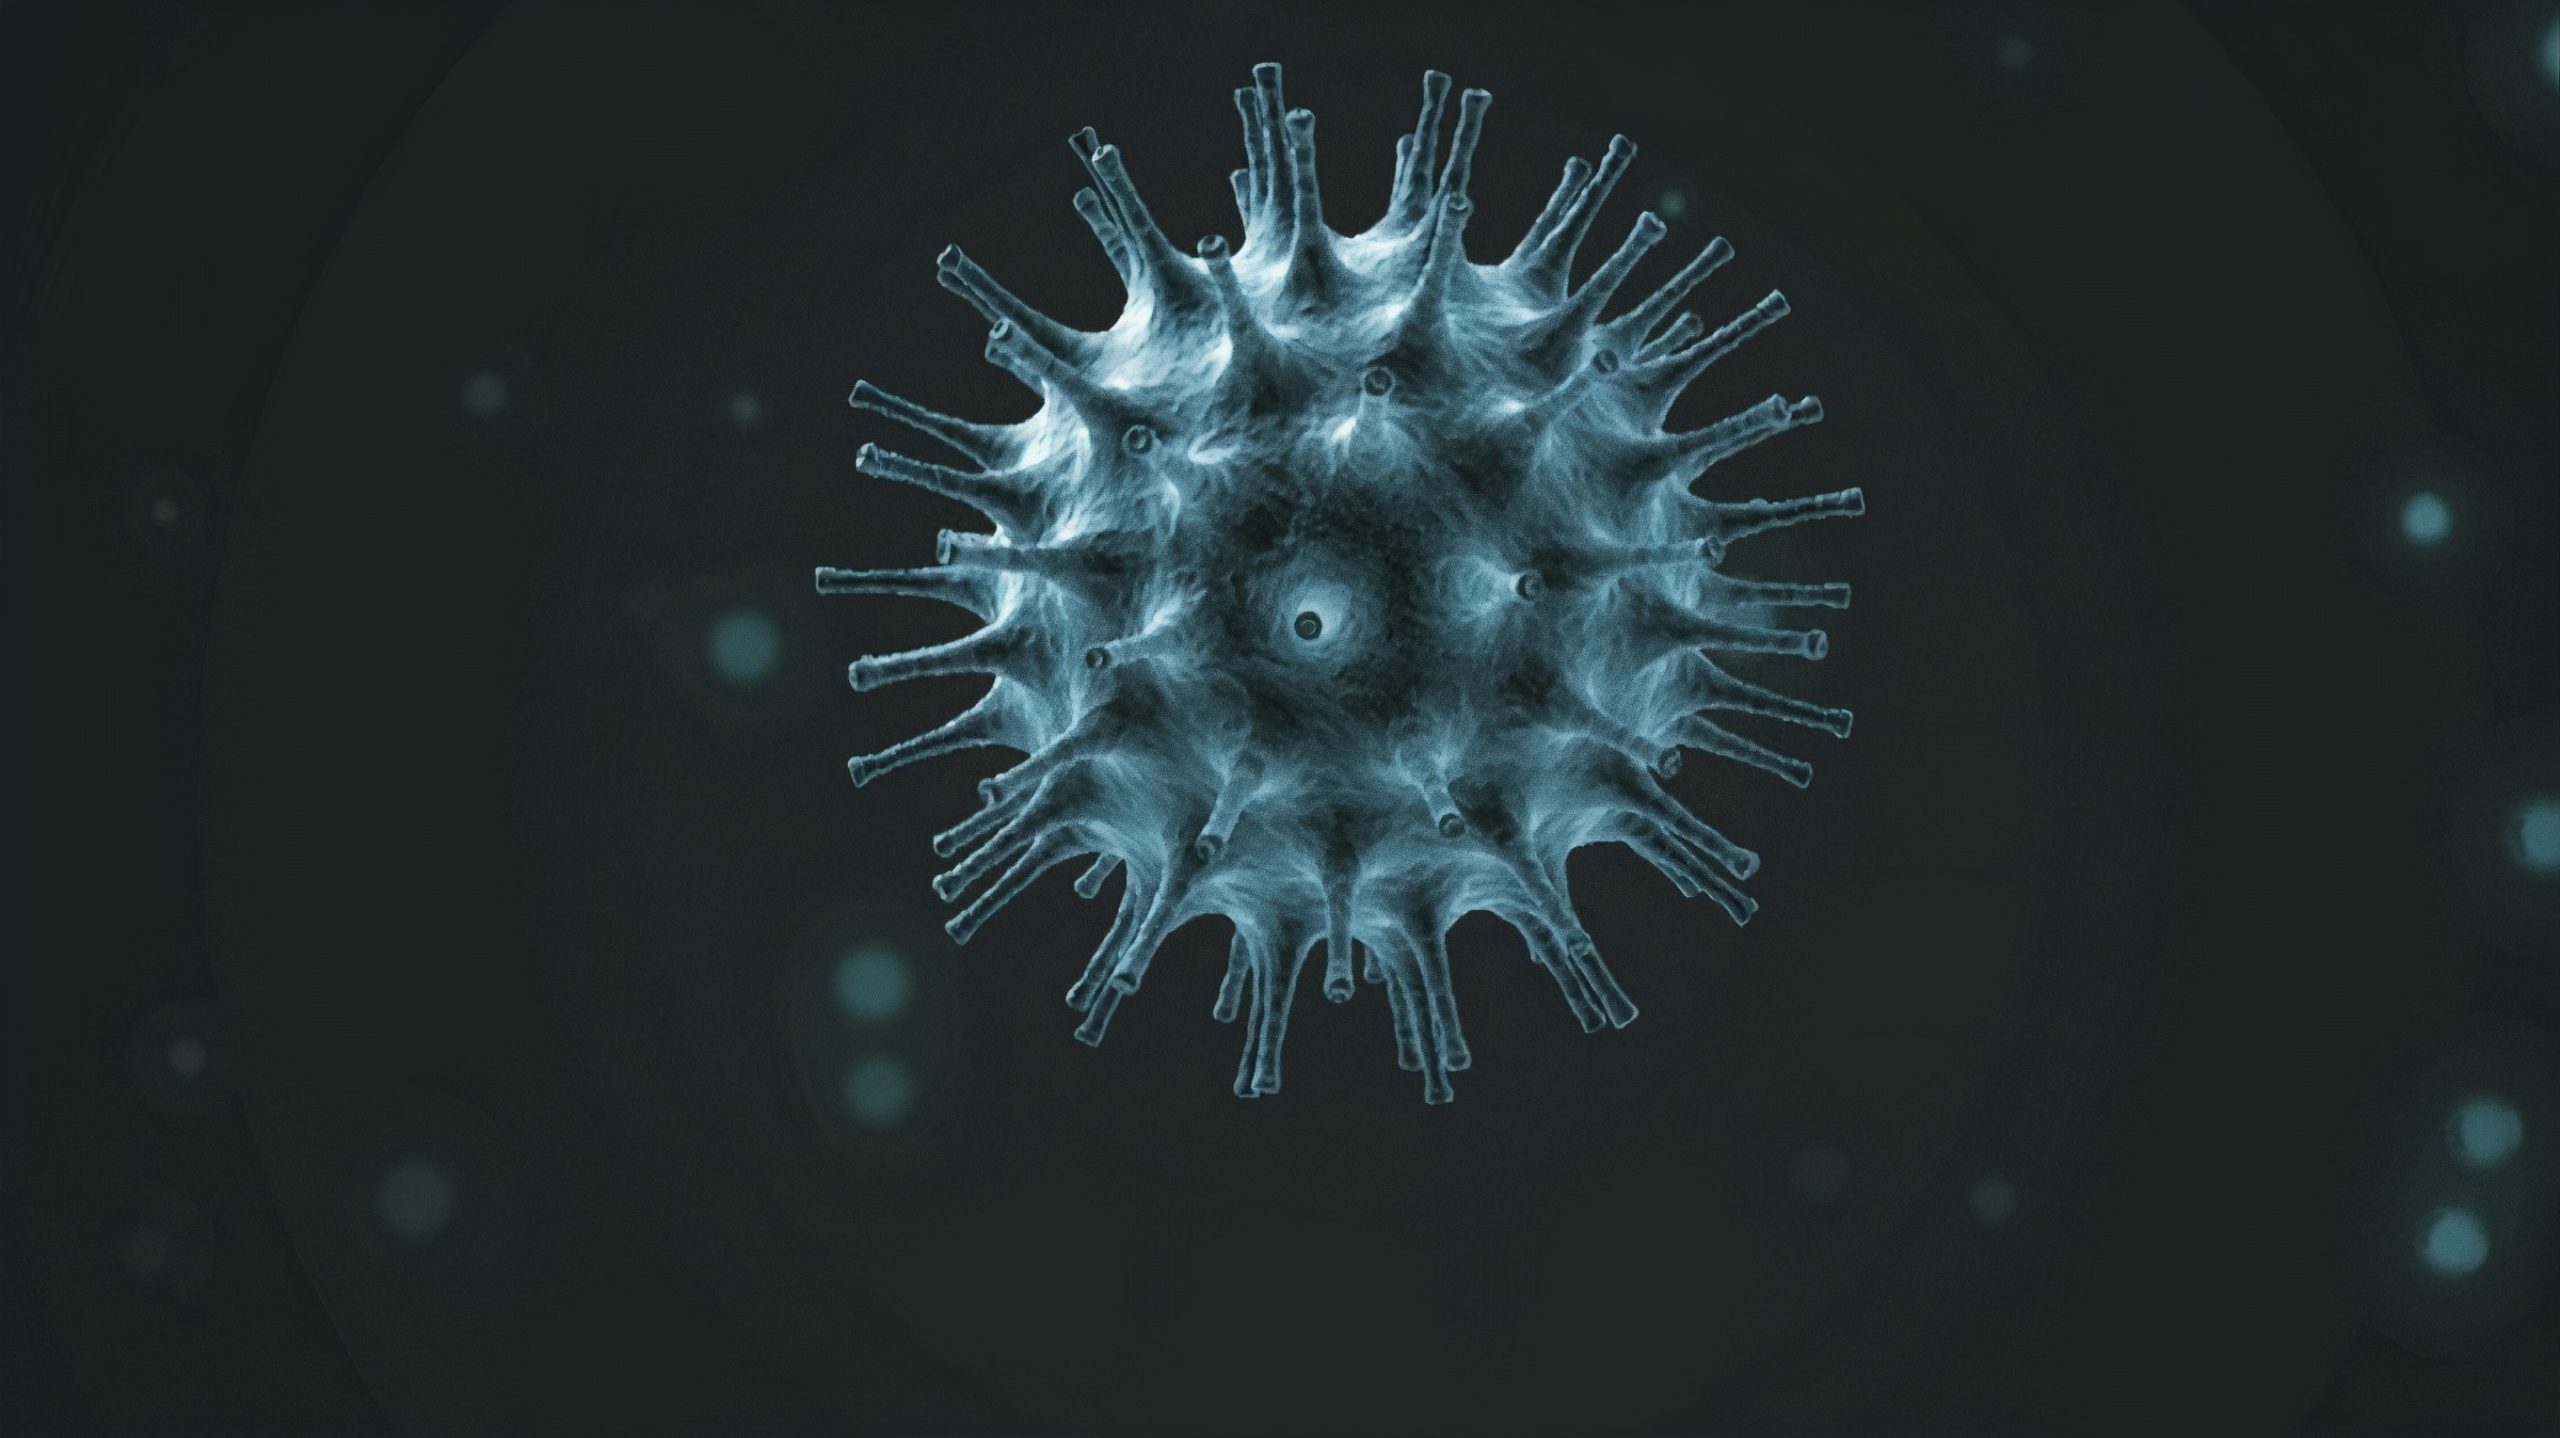 Coronavirus, provvedimenti decreto 8 marzo 2020